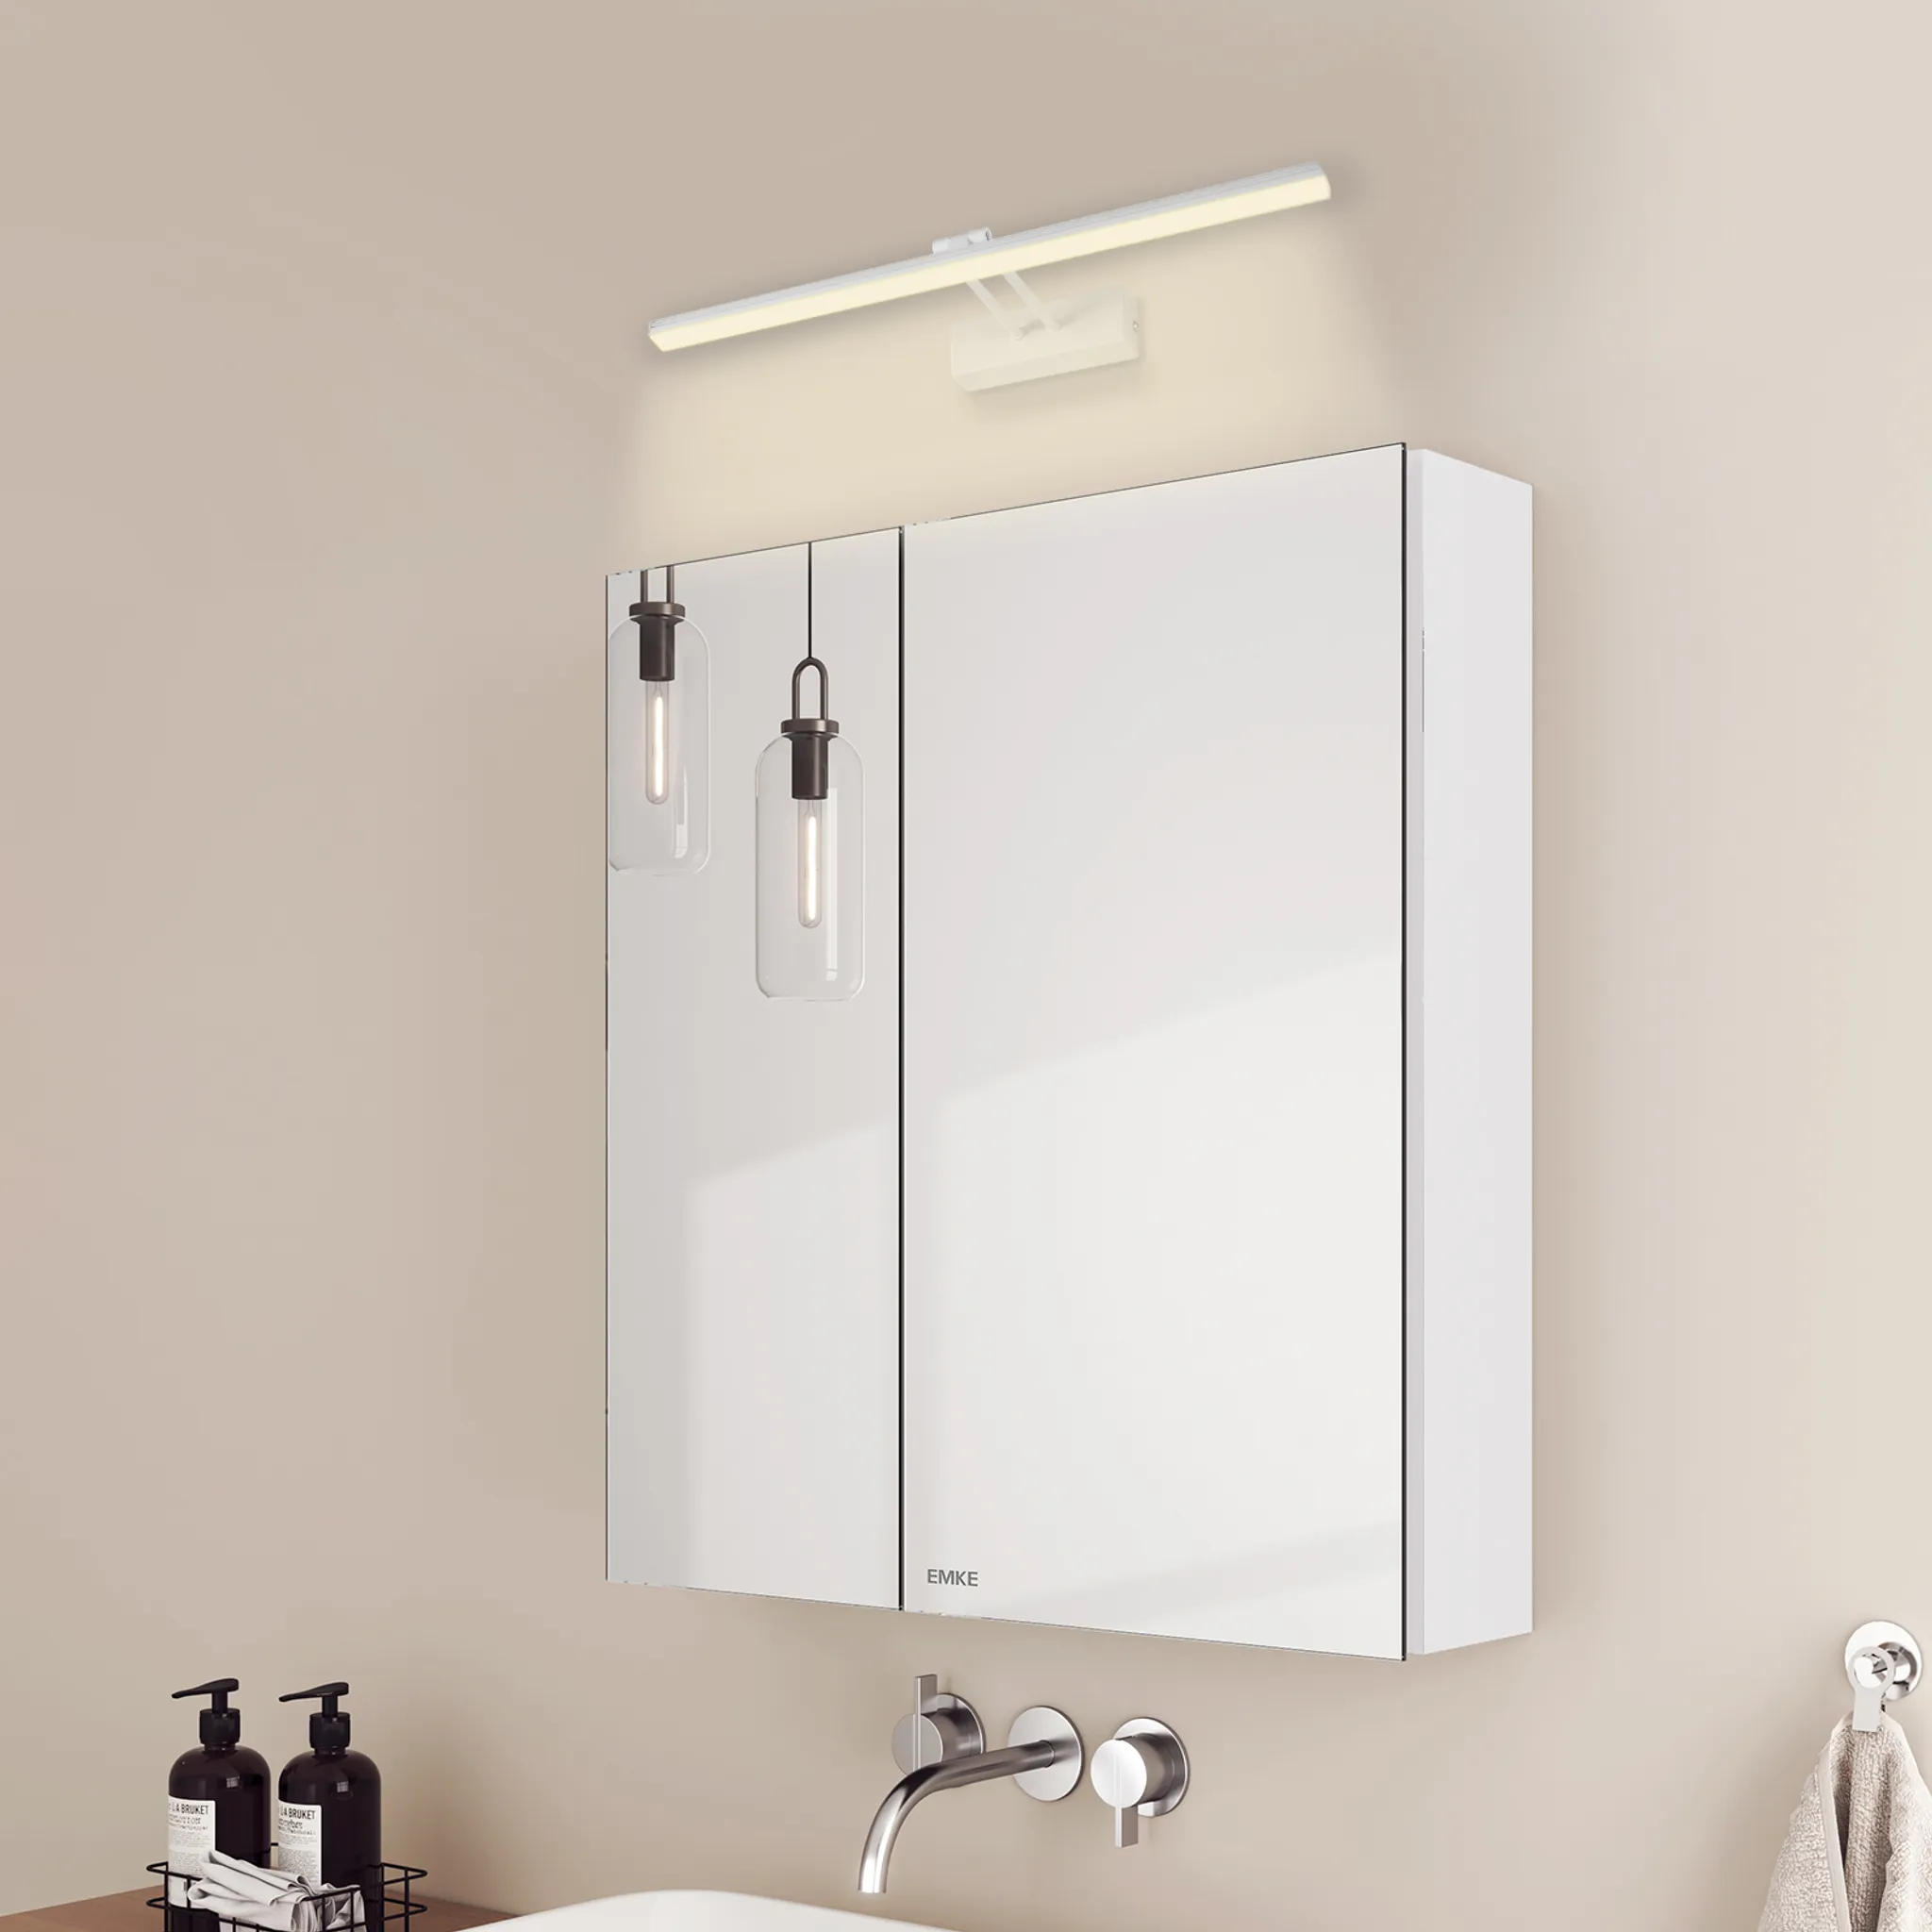 EMKE Spiegelschrank und Spiegellampen,60x65x14.5cm Neutral 4200k Glasböden Weiß Badspiegelschrank Licht und Weiß Wandleuchten 2